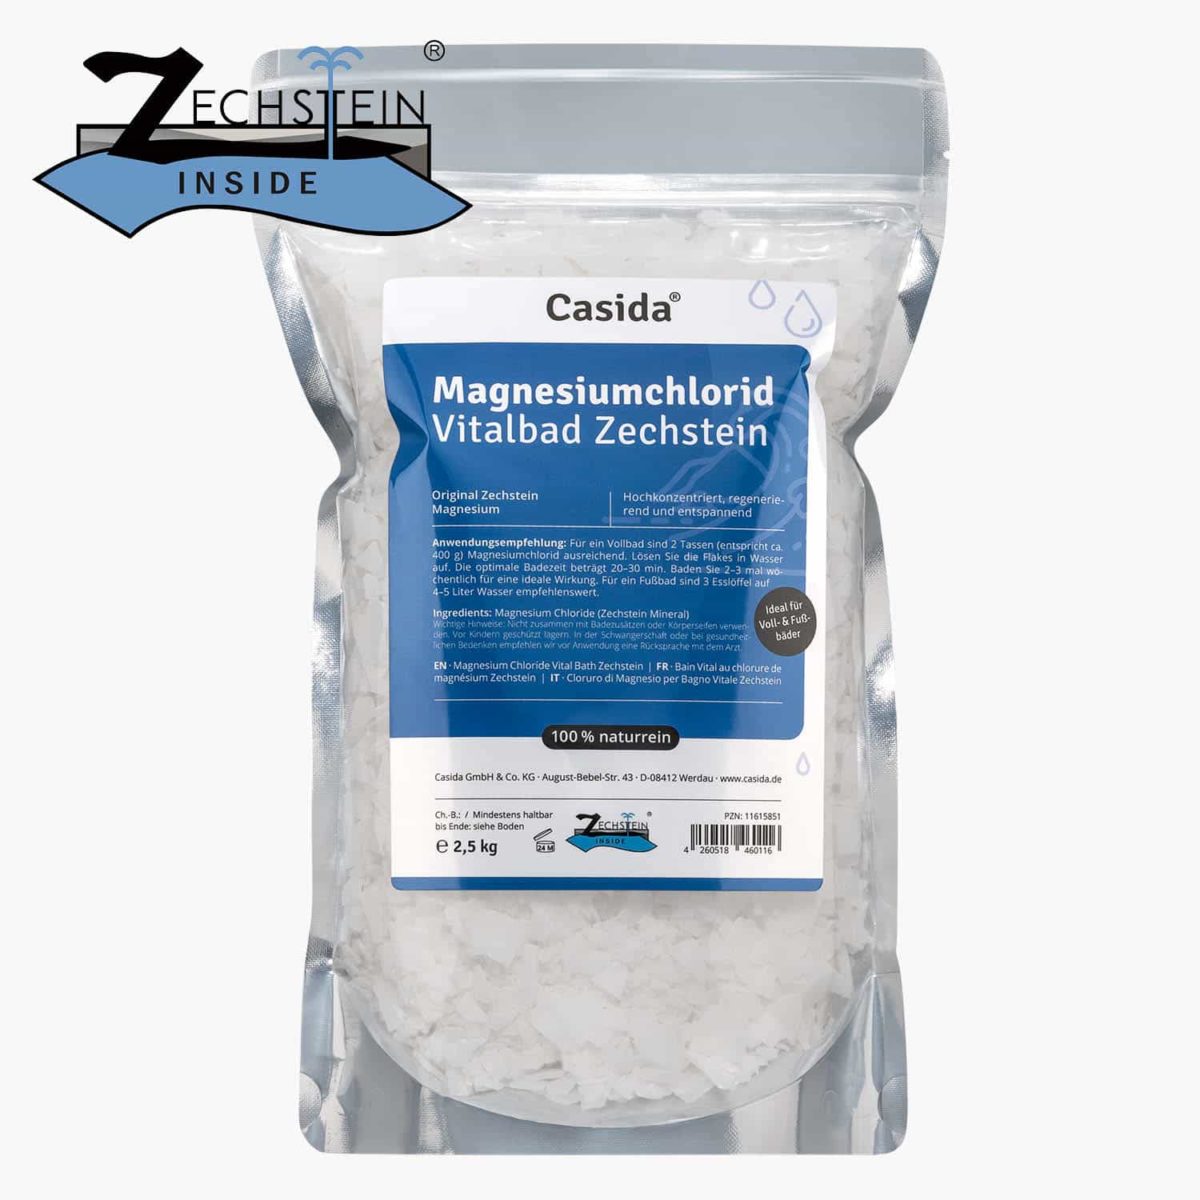 Casida Magnesiumchlorid Vitalbad Zechstein 2,5 kg PZN DE 12477032 PZN AT 4555829 UVP 26,95 € EAN 4260518460123